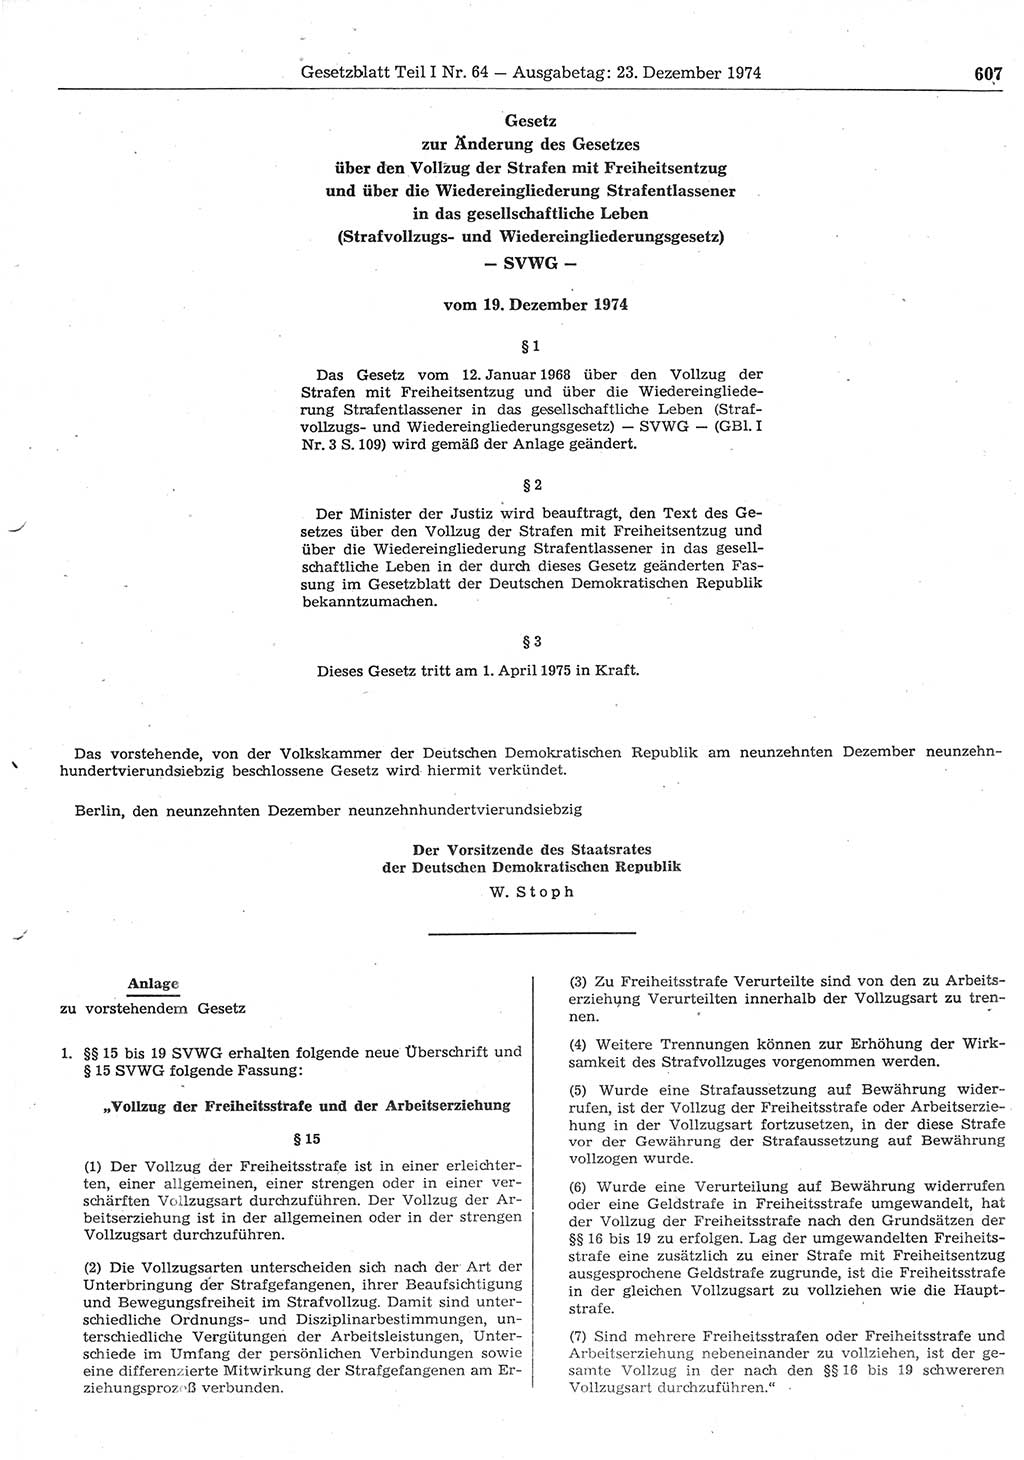 Gesetzblatt (GBl.) der Deutschen Demokratischen Republik (DDR) Teil Ⅰ 1974, Seite 607 (GBl. DDR Ⅰ 1974, S. 607)